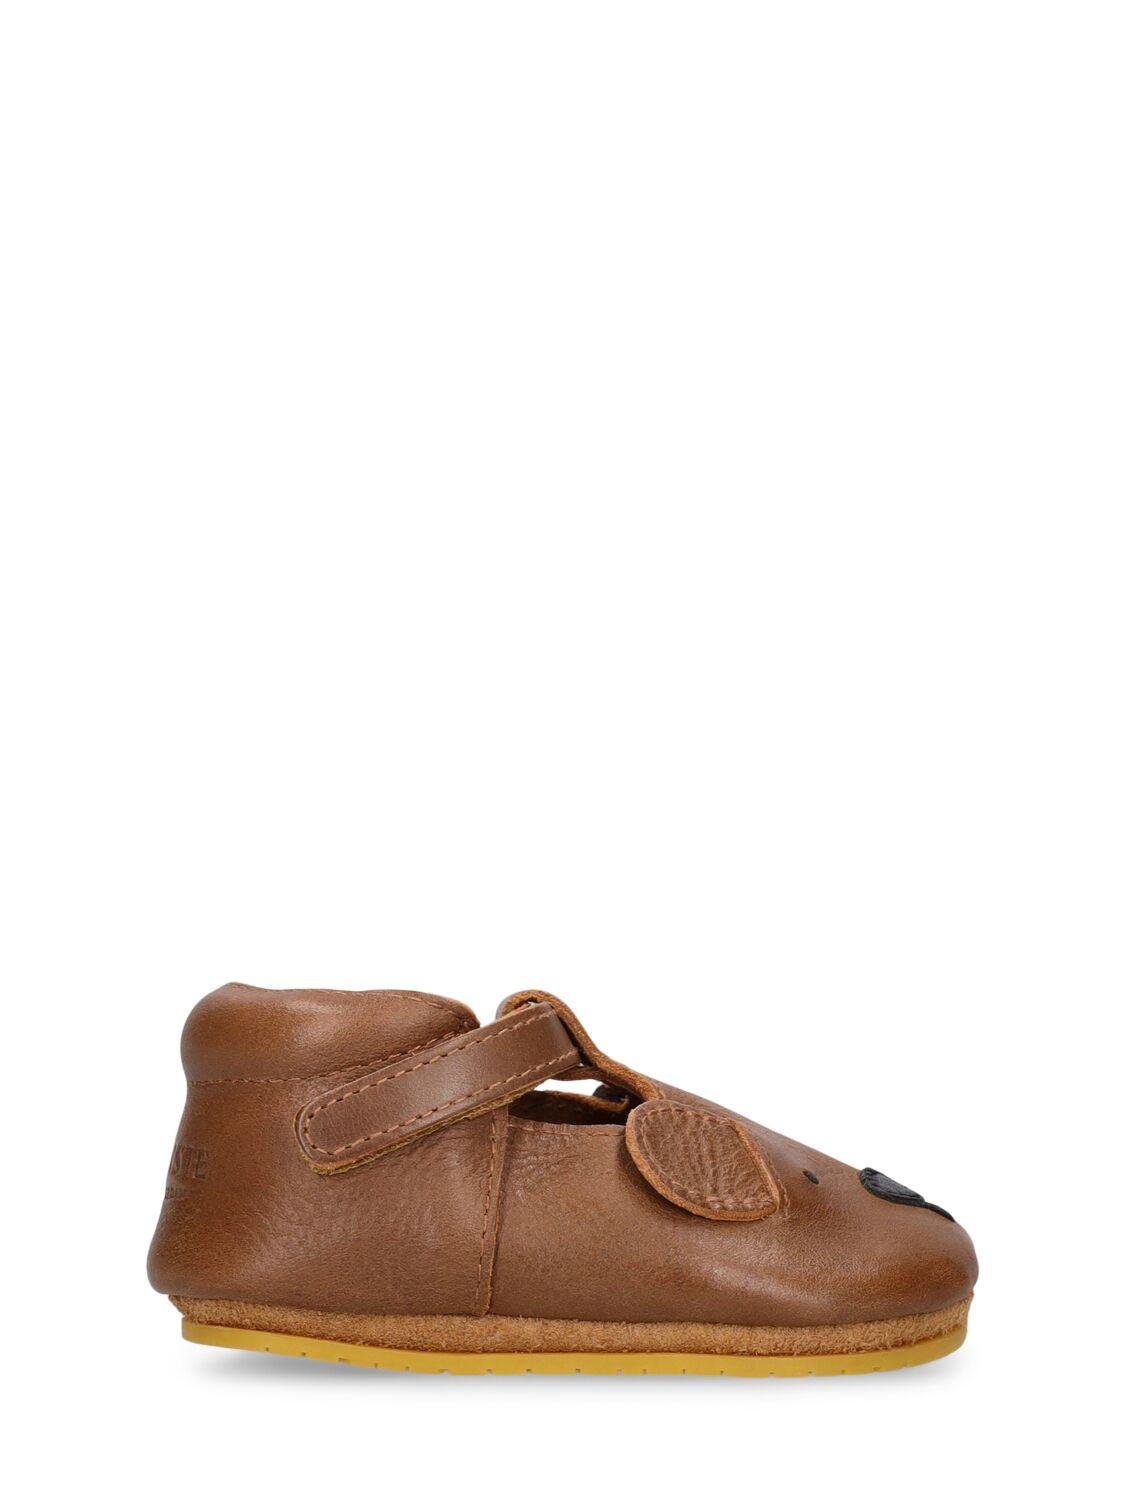 Bear Leather Pre-walker Shoes by DONSJE